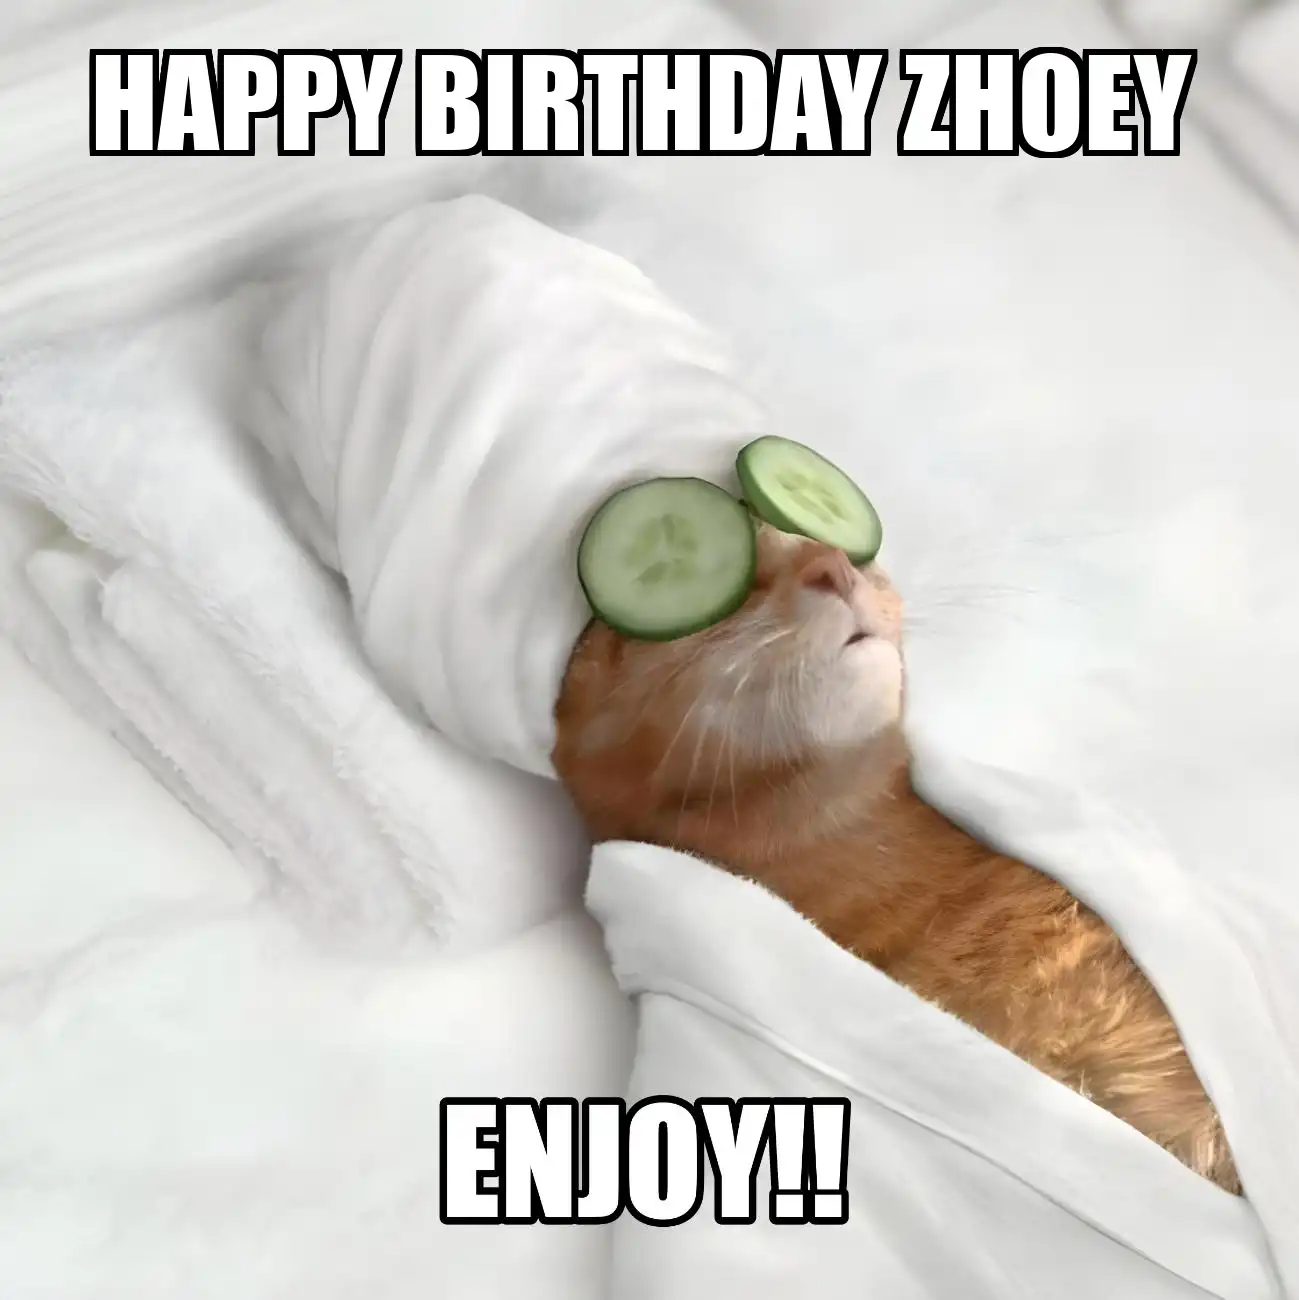 Happy Birthday Zhoey Enjoy Cat Meme